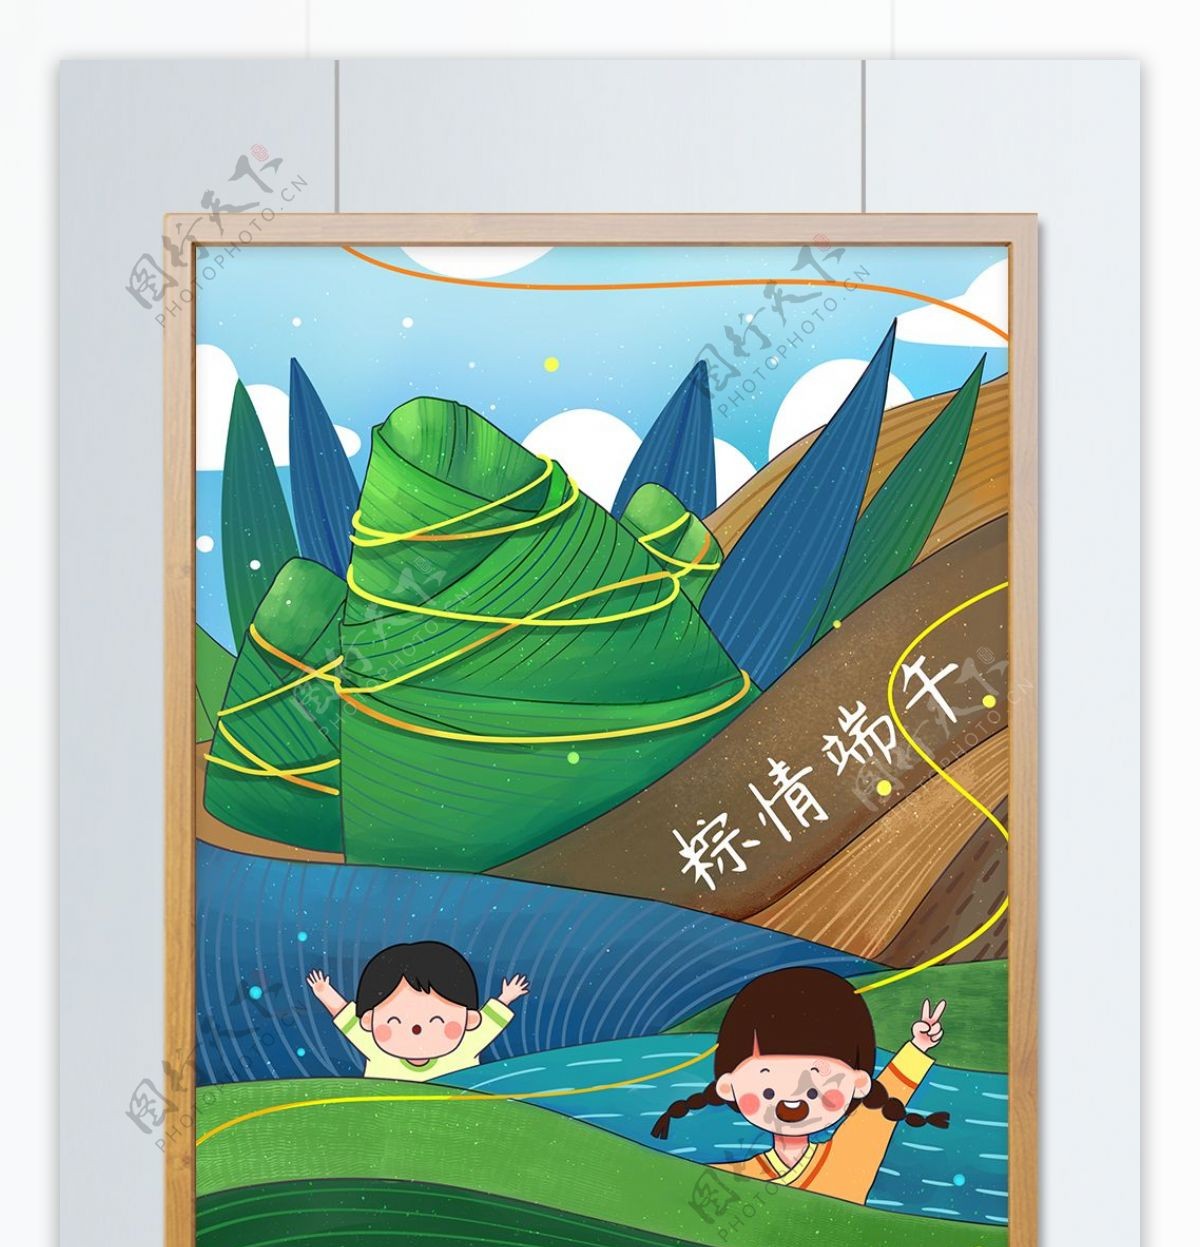 端午节青山绿水绳系粽子插画